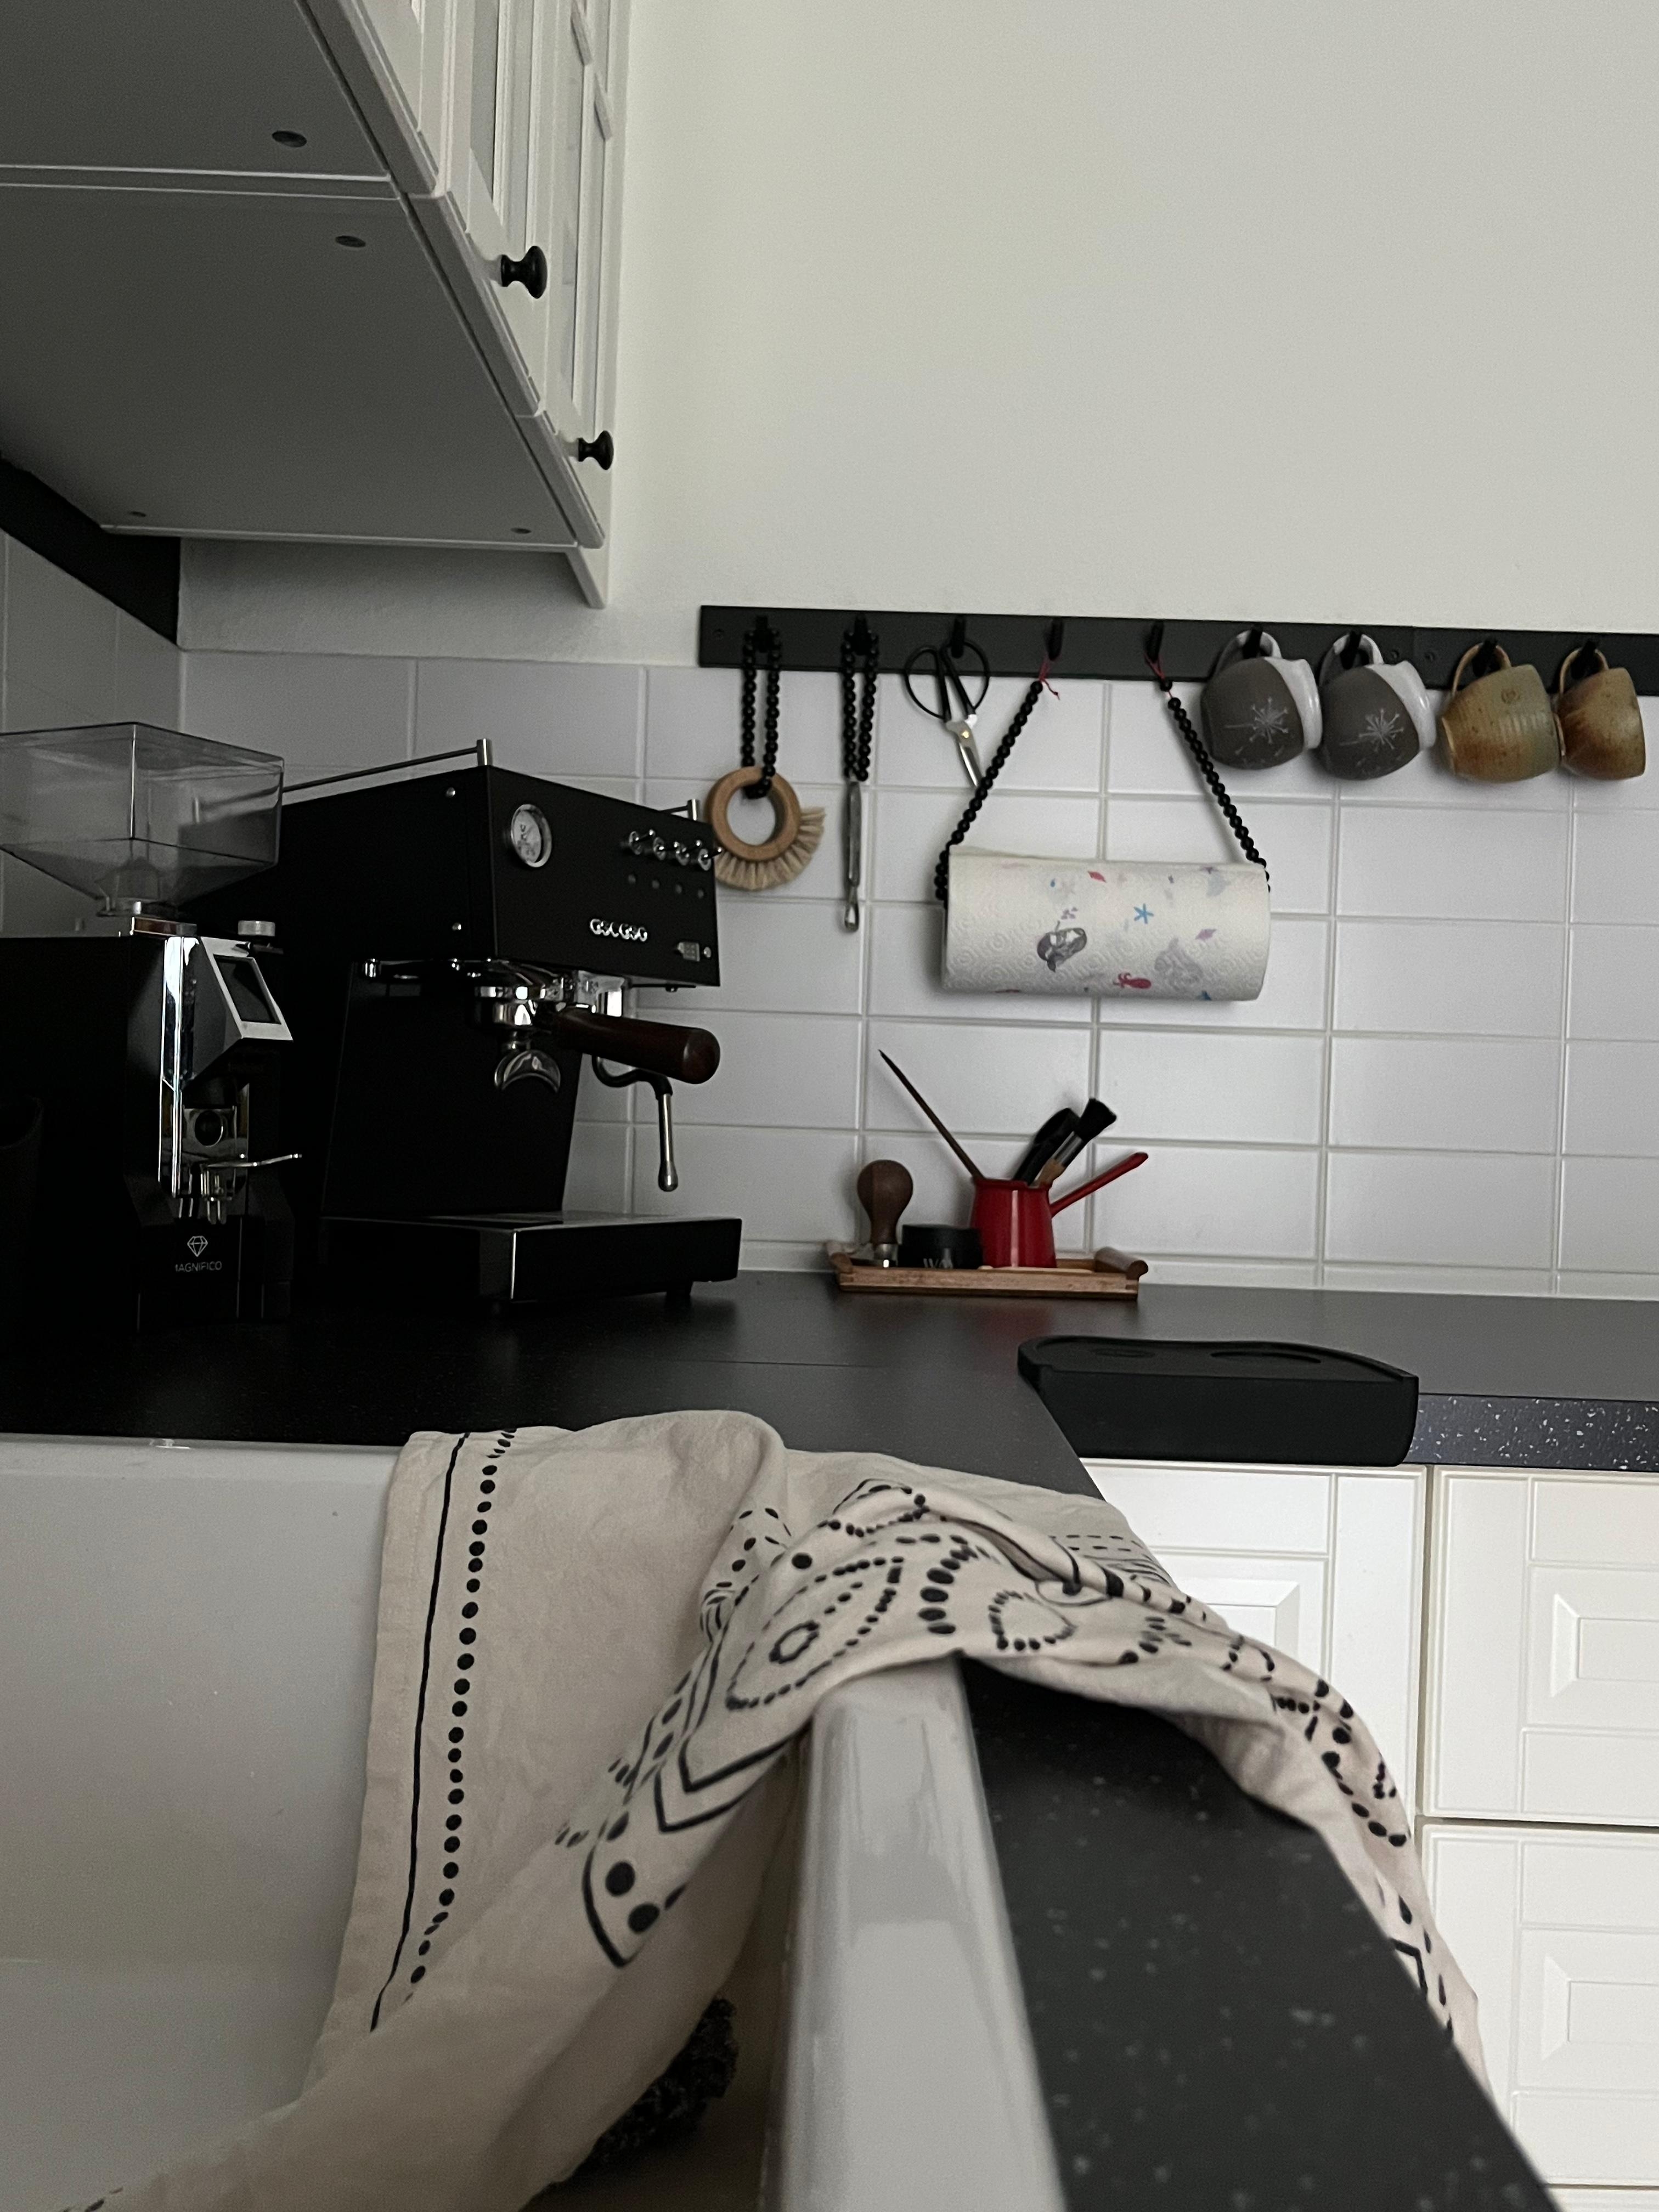 Kaffeeecke #landhausküche #weißeküche #ikea #kaffee #siebträger #espressoundco #wohnküche #altbau #hakenleiste